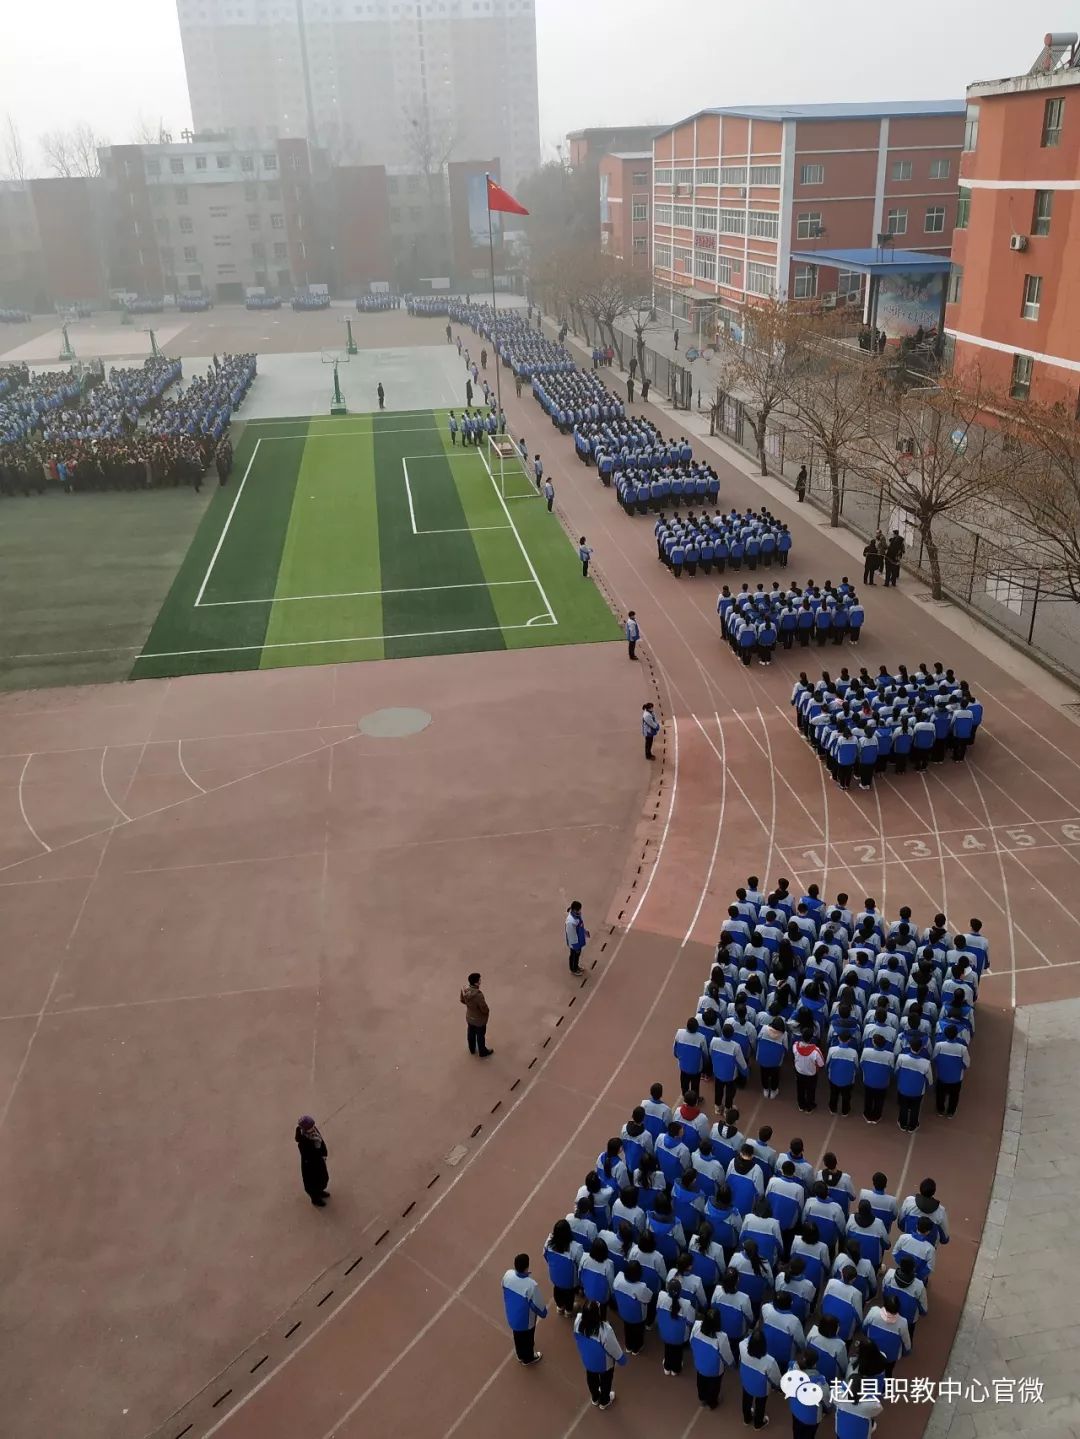 热文●赵县职教中心新领导班子集体亮相并举行新年第一次升旗仪式